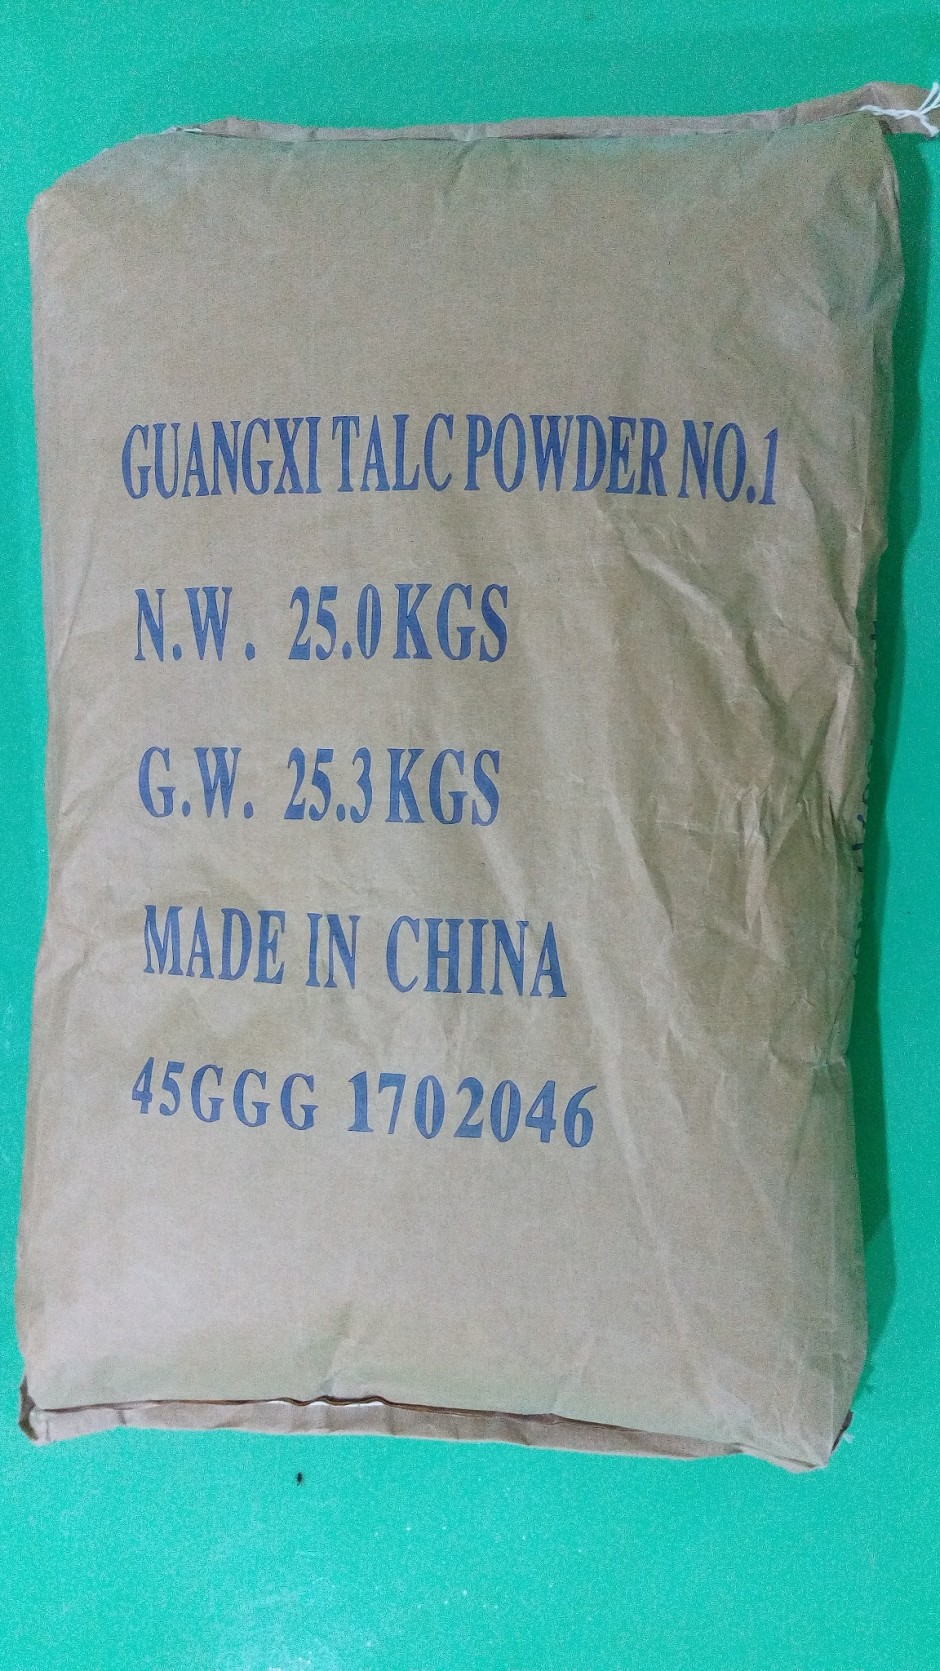 Guangxi Talc Powder No. 1